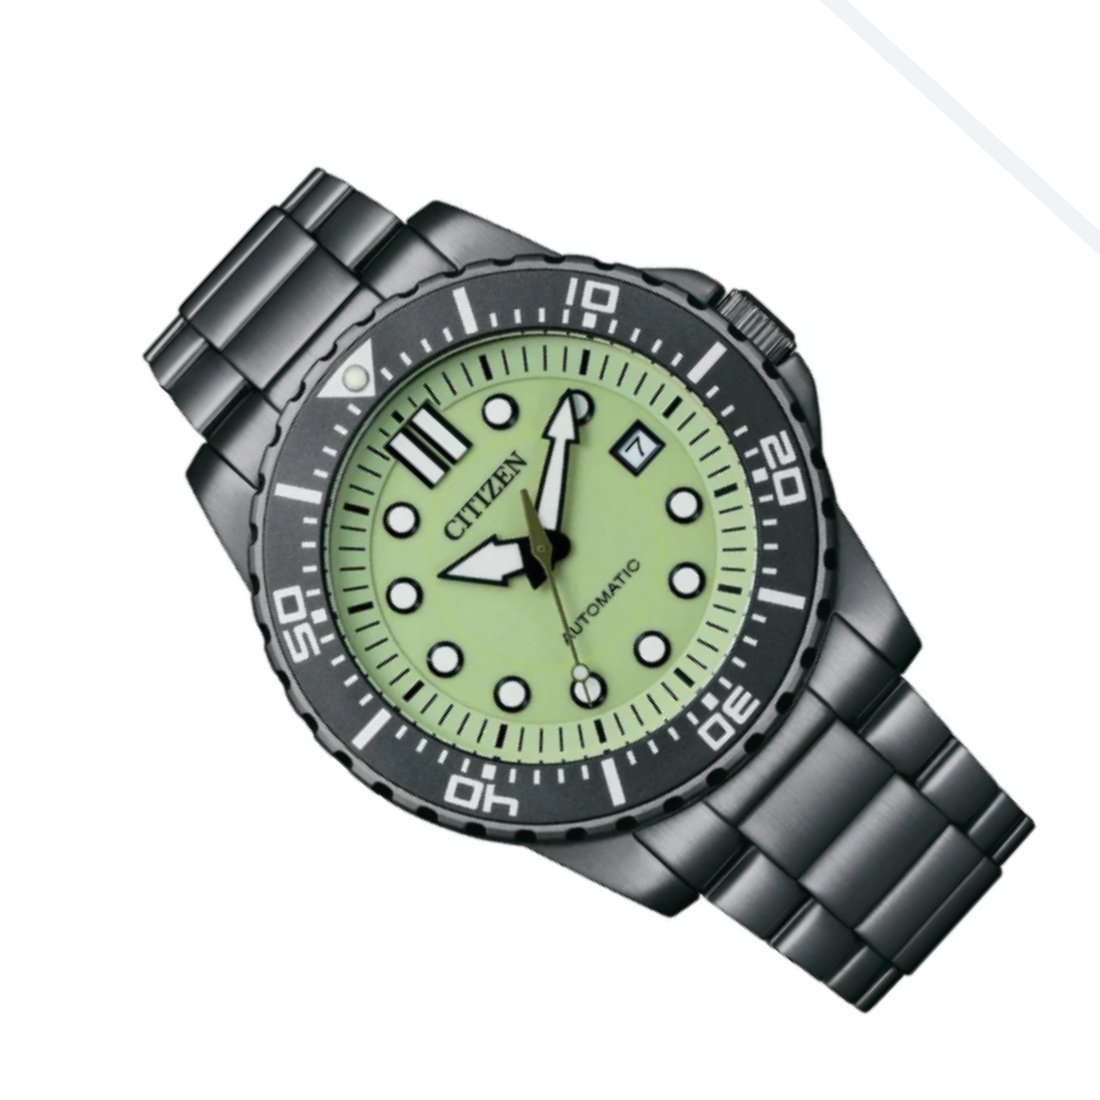 Citizen NJ0177 NJ0177-84X Automatic Mint Green Dial Watch (PRE-ORDER) -Citizen